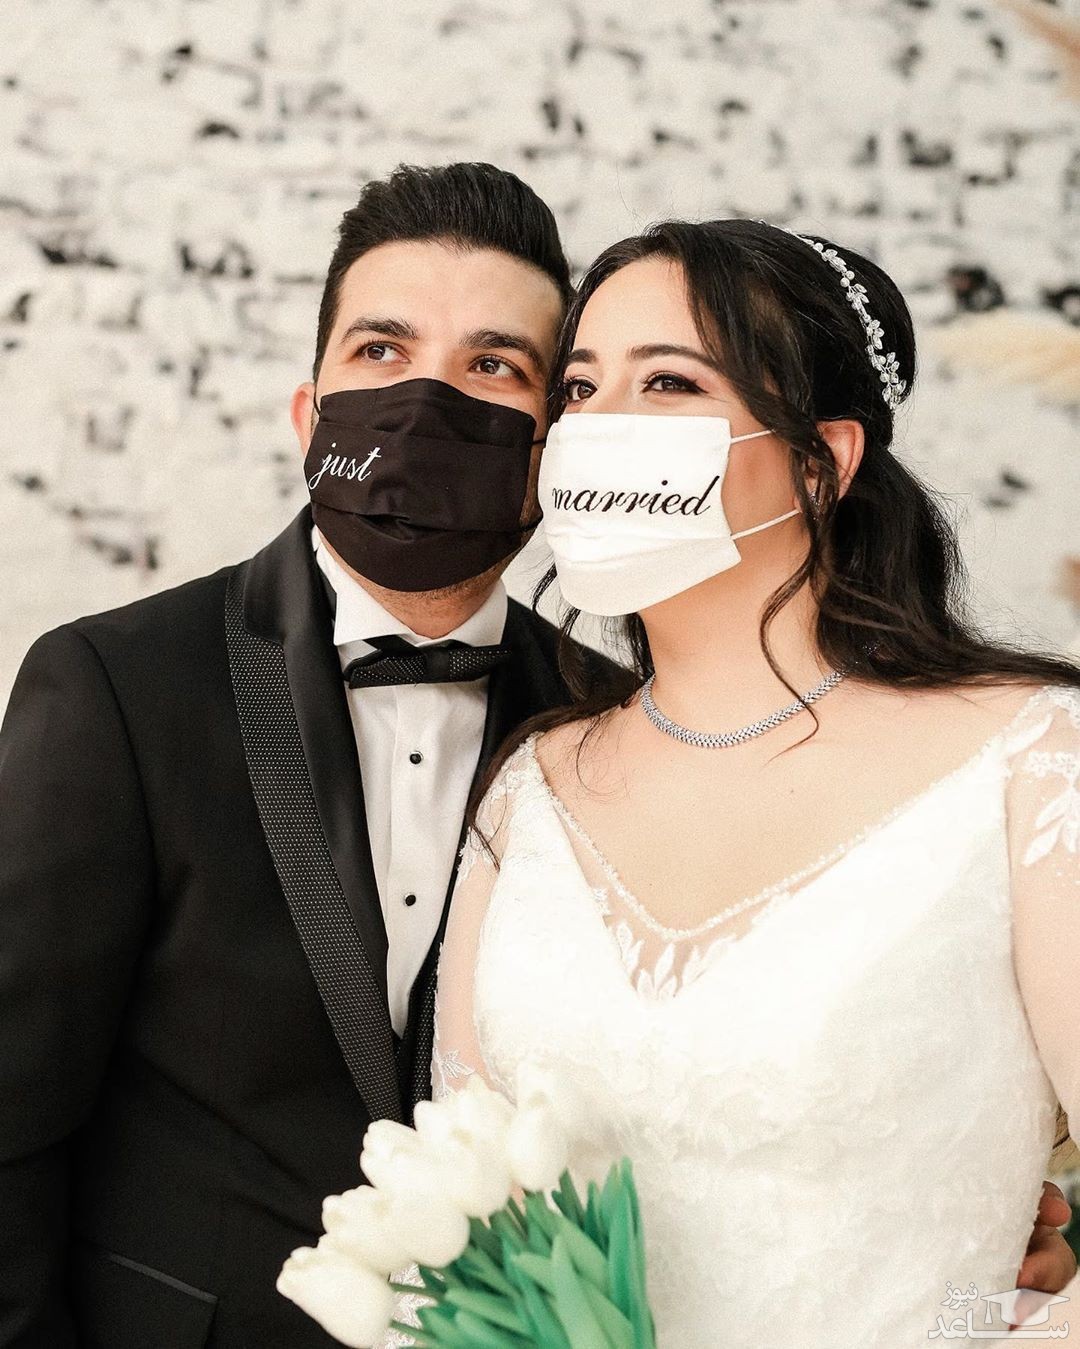 انواع مدل های جدید ماسک عروس ویژه دوران کرونا + فیلم